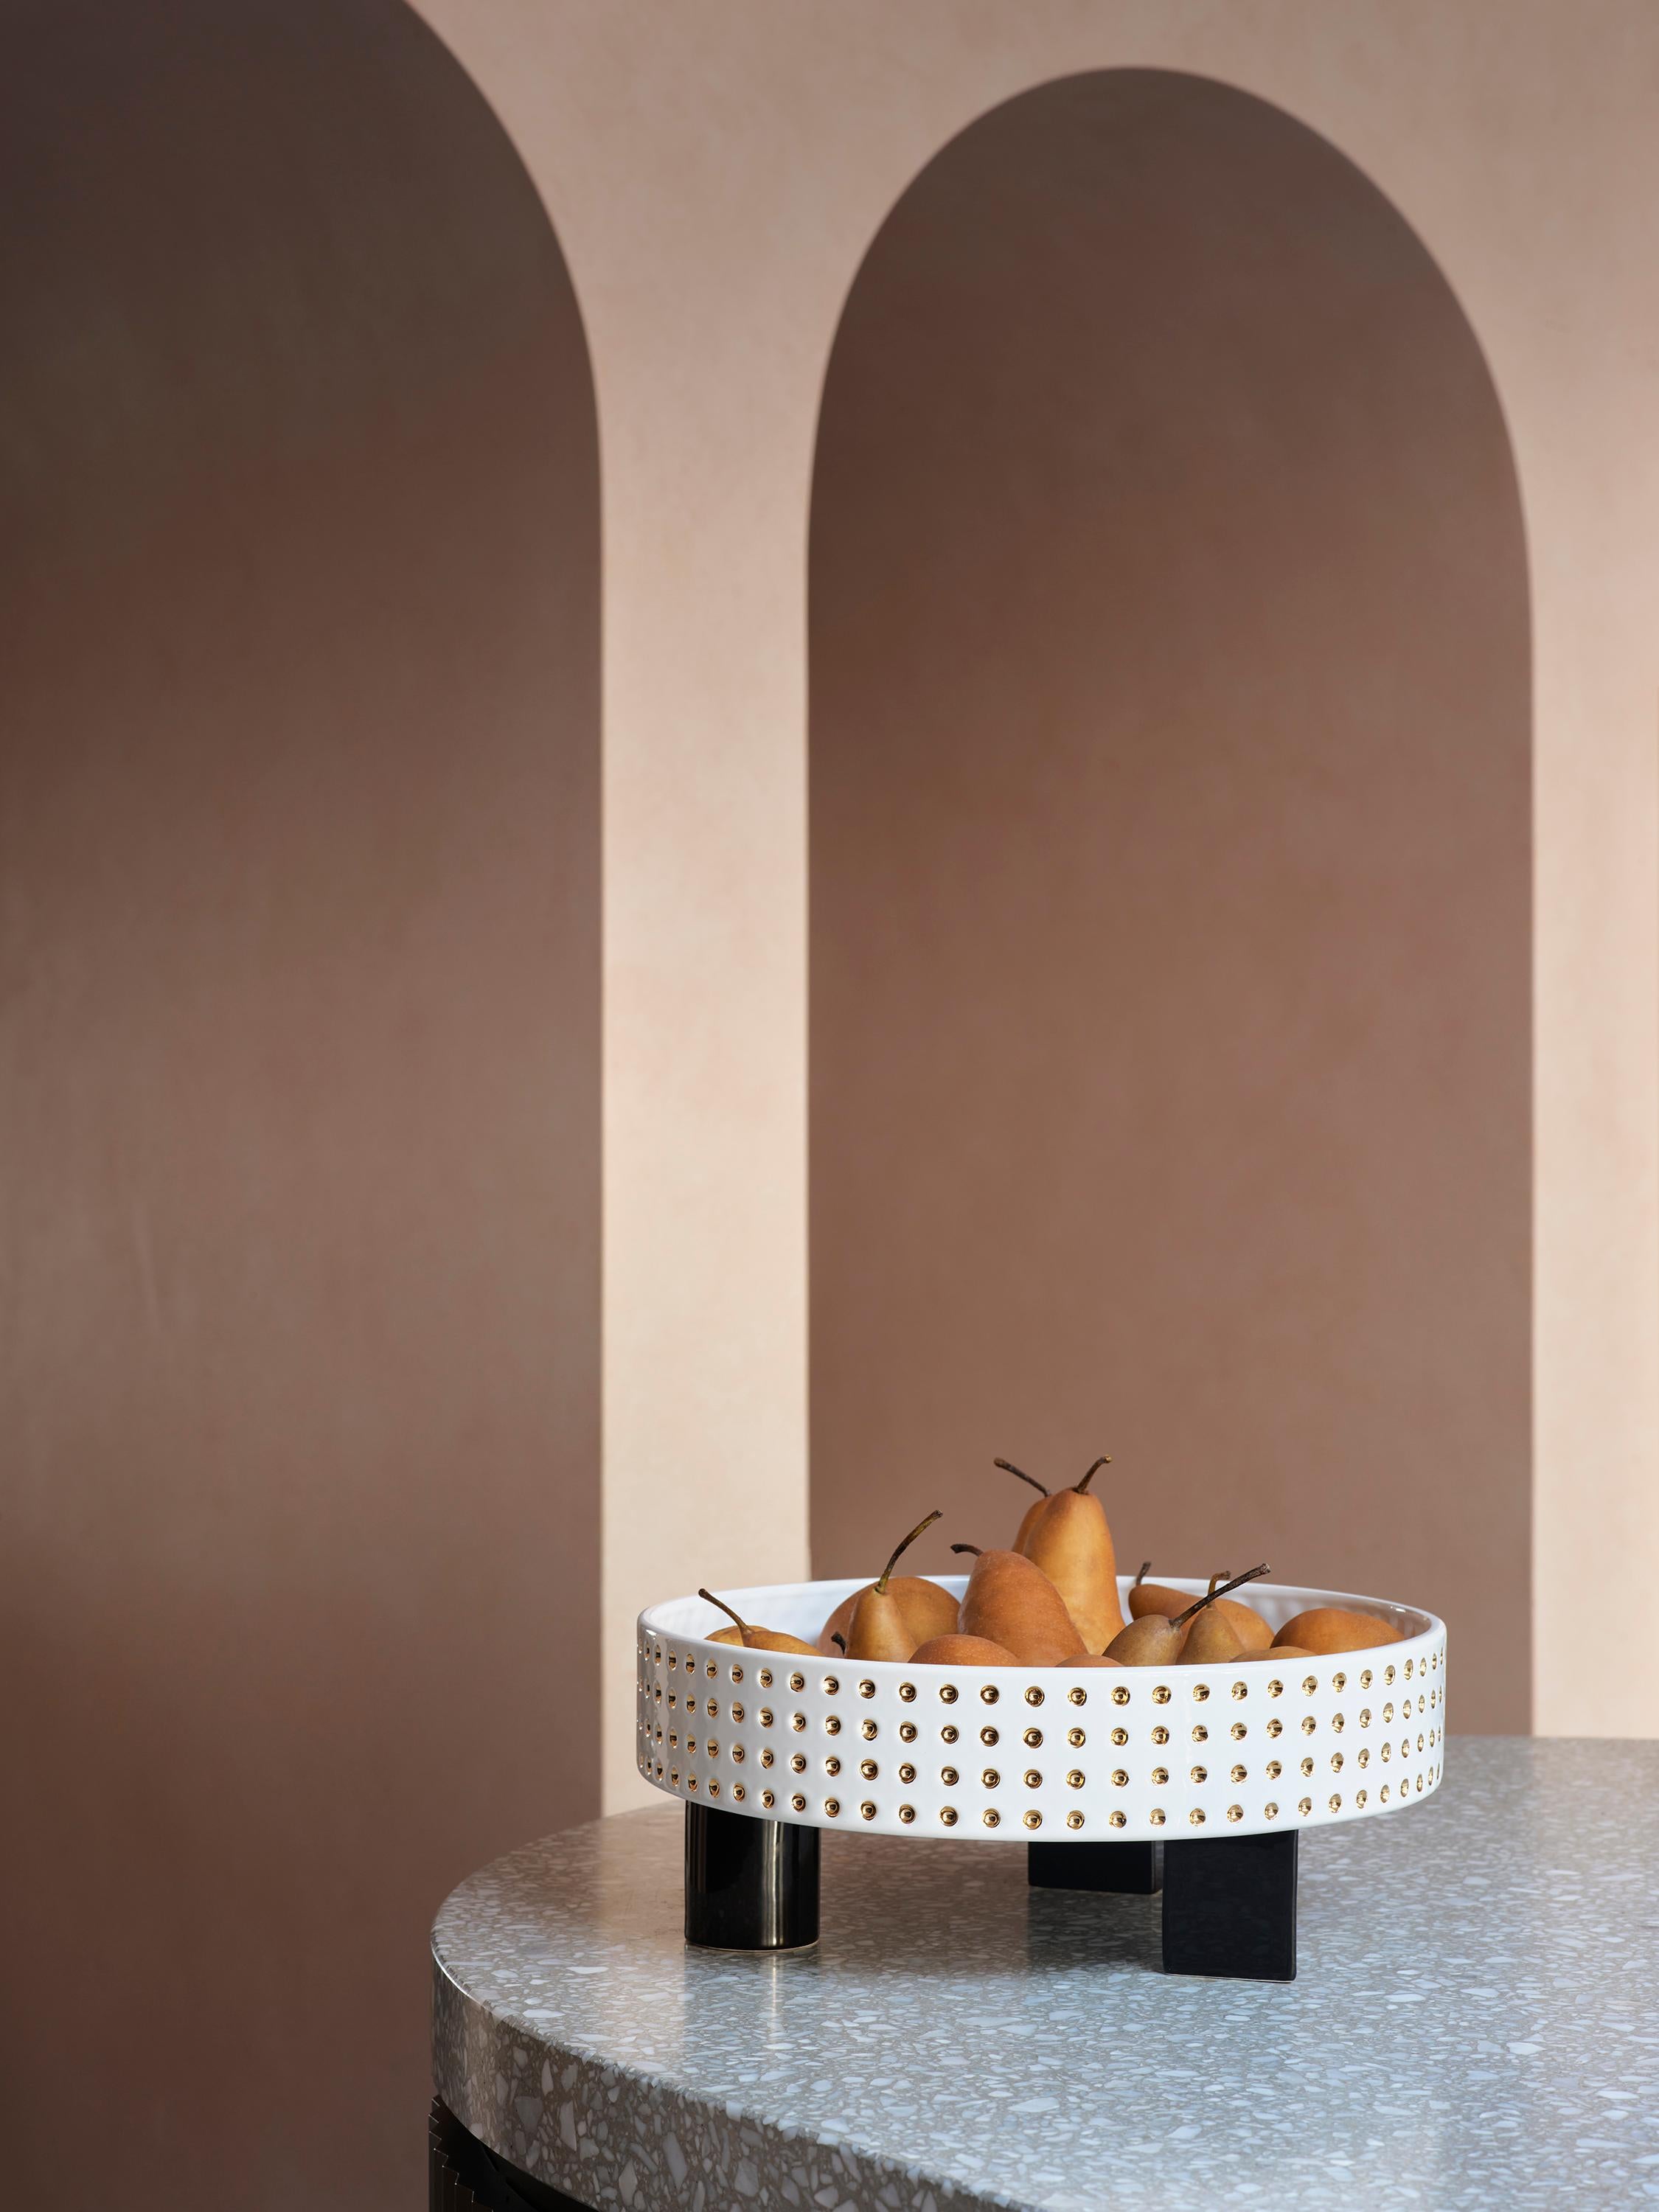 Die Billy-Schale ist ein auffälliger Blickfang für den Esstisch oder die Küchenbank und verbindet die respektlosen Designcodes der Postmoderne der 1980er Jahre mit Anspielungen auf die Postpunk-Musik und -Mode derselben Zeit. Das runde Keramikgefäß